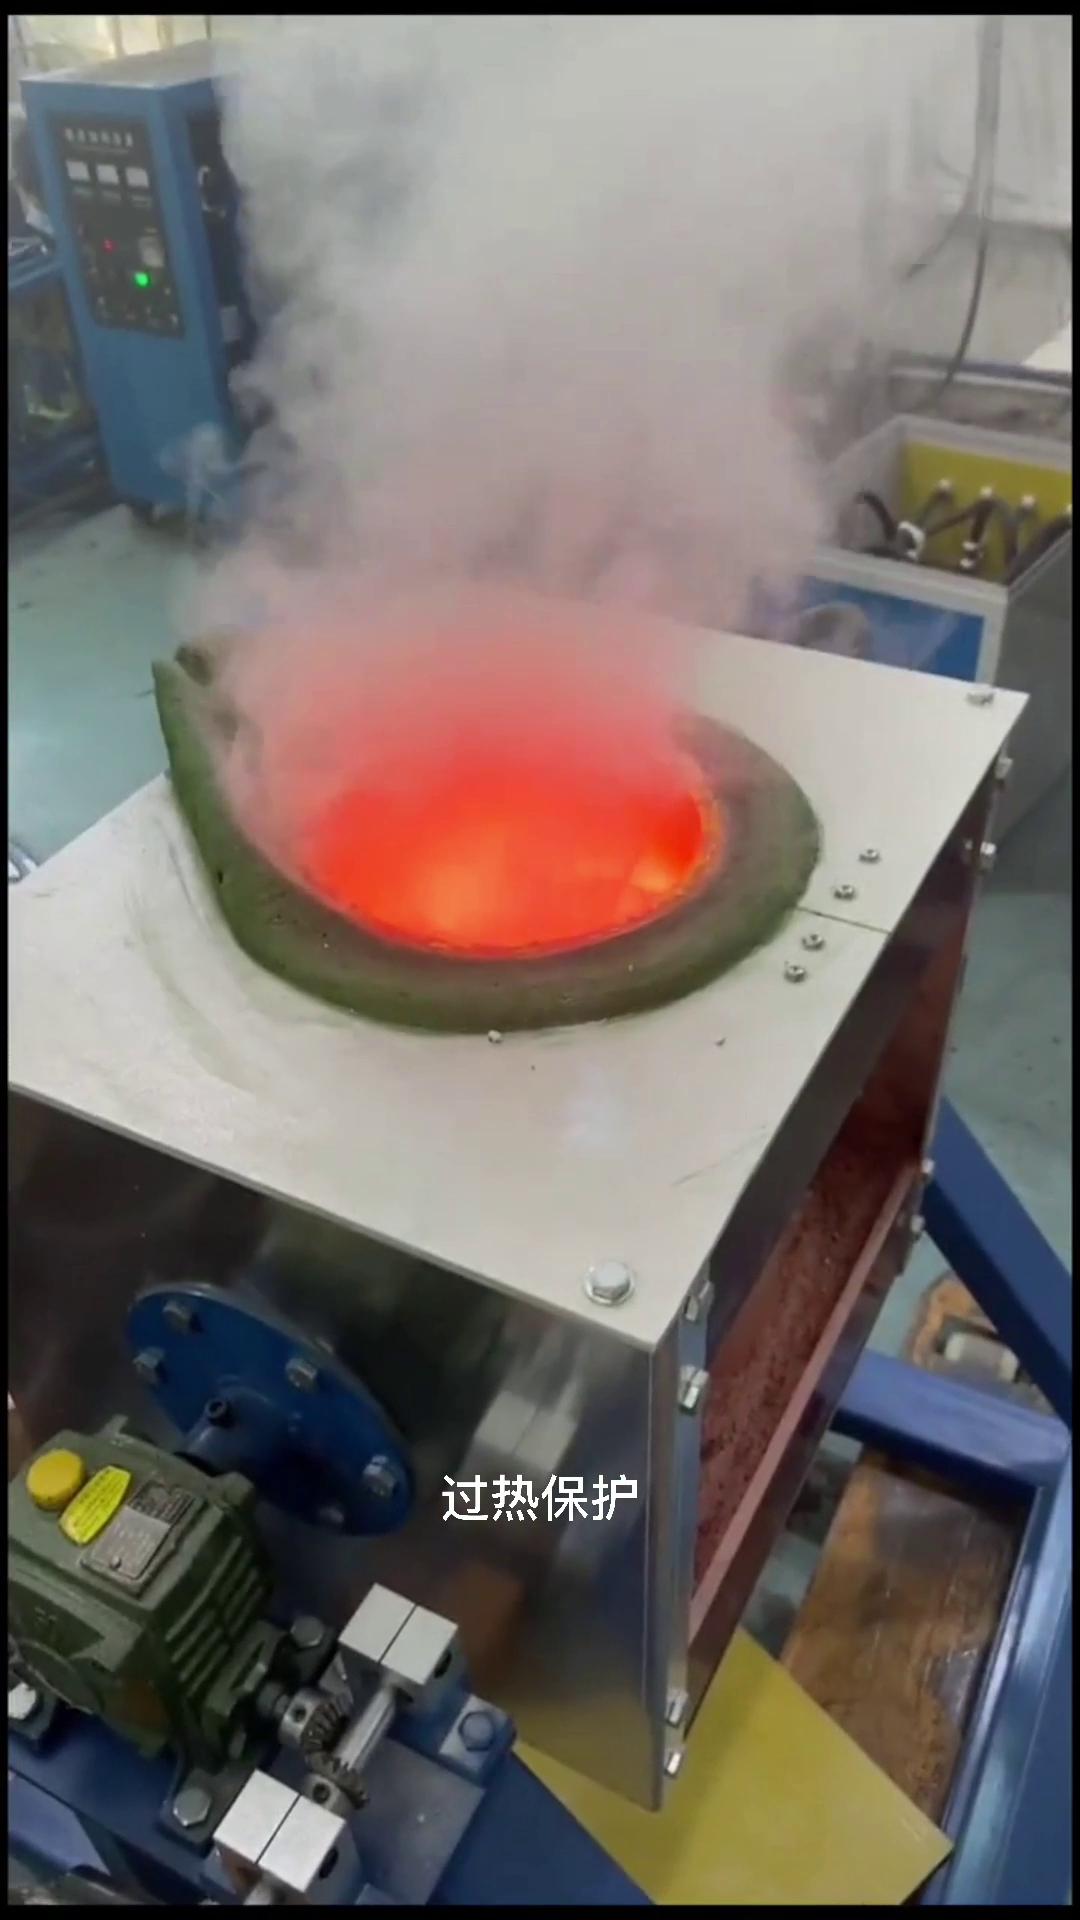 竟然温度高达2000度,只见金属放进炉子几分钟金属就熔成液体,这就是中频熔炼炉